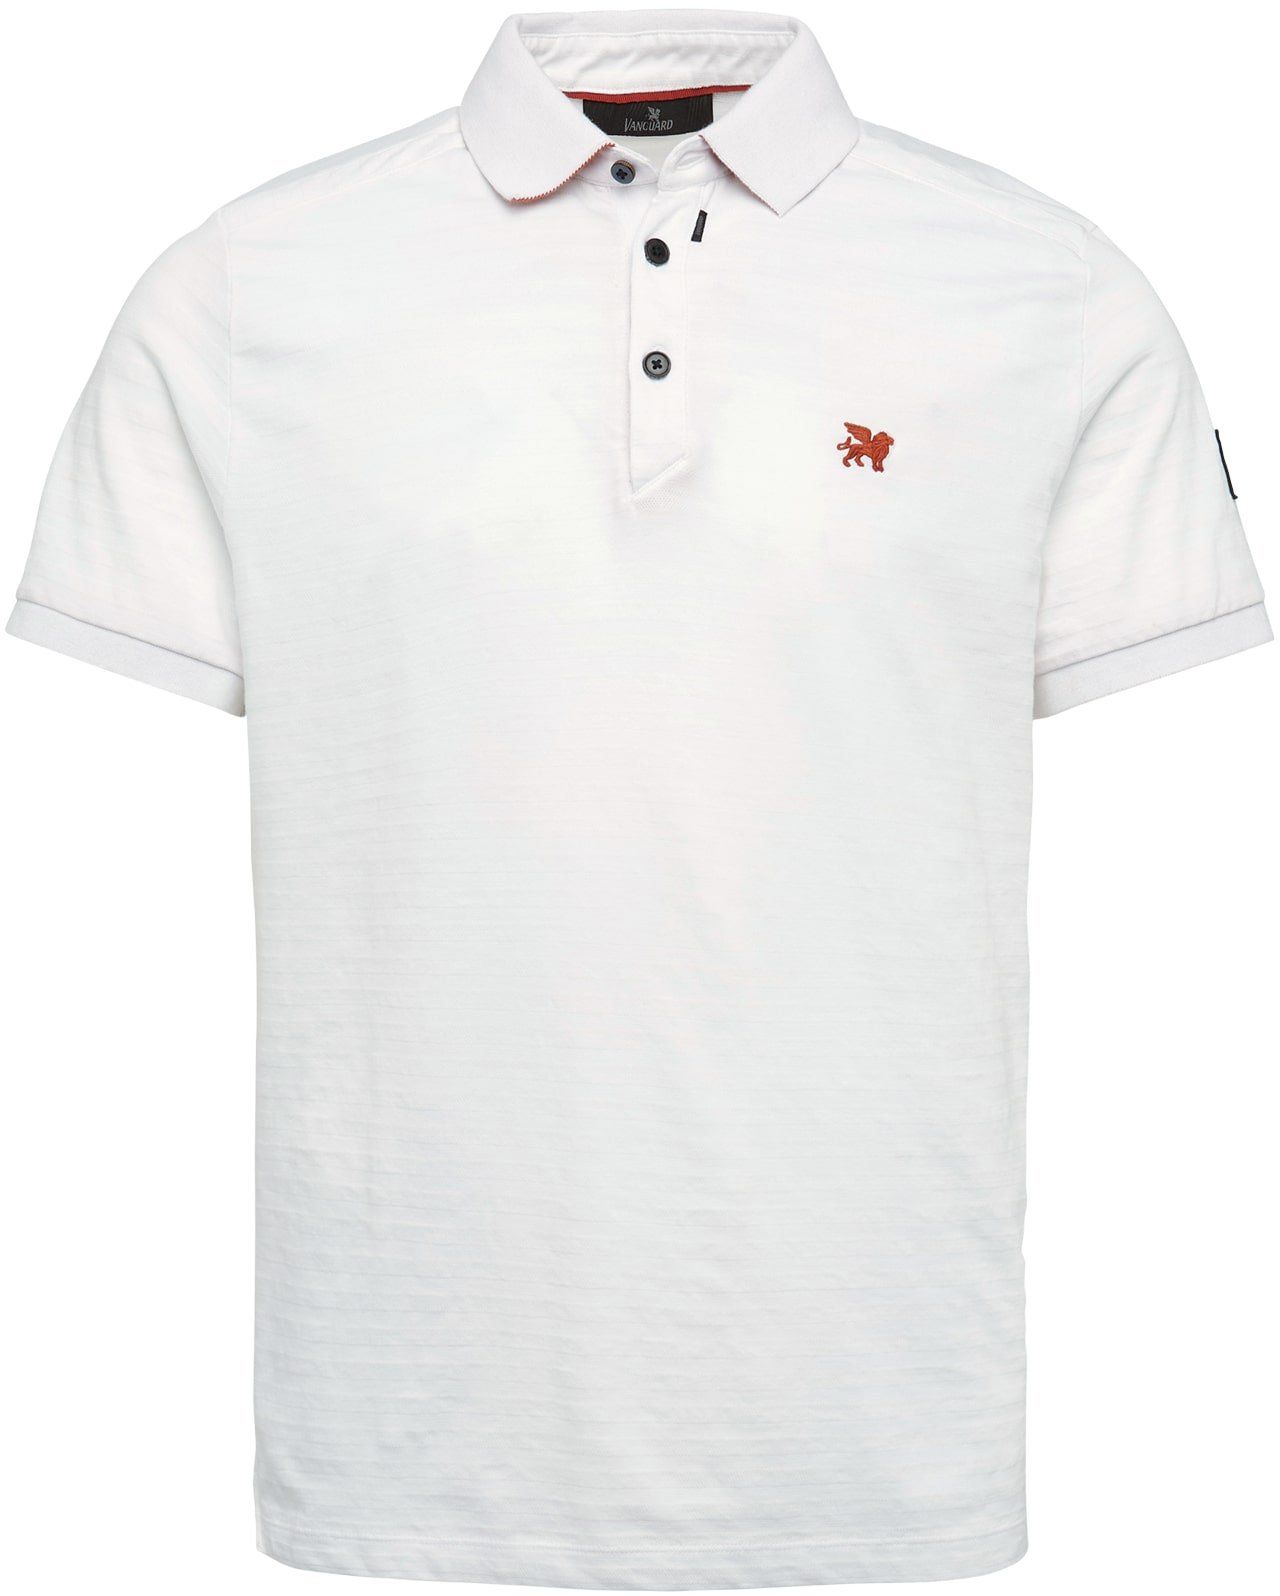 Vanguard Polo Shirt Jersey White size 3XL